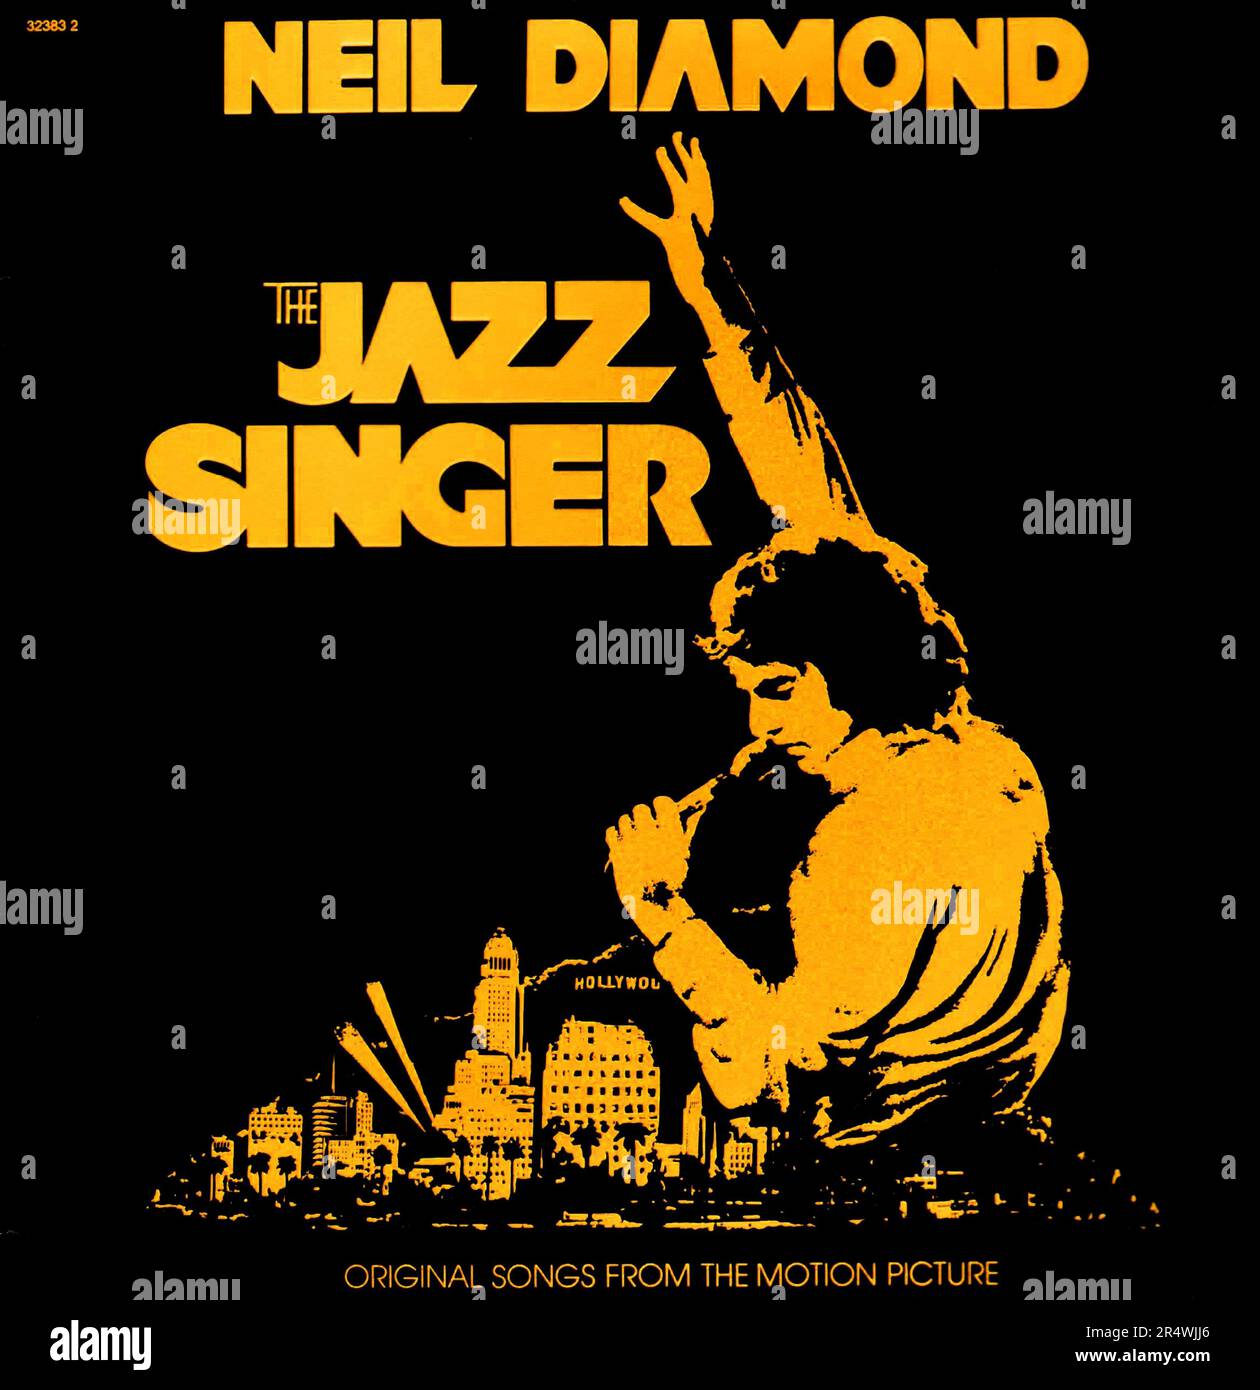 Il Cantante Jazz è un album di Neil Diamond che è stato rilasciato nel 1980. È stata la colonna sonora per il 1980 remake del film con lo stesso nome. Mentre il film ha bombardato, l'album ha venduto oltre 5 milioni di copie ed è stato il diamante più grande mai vendere album negli Stati Uniti. Foto Stock